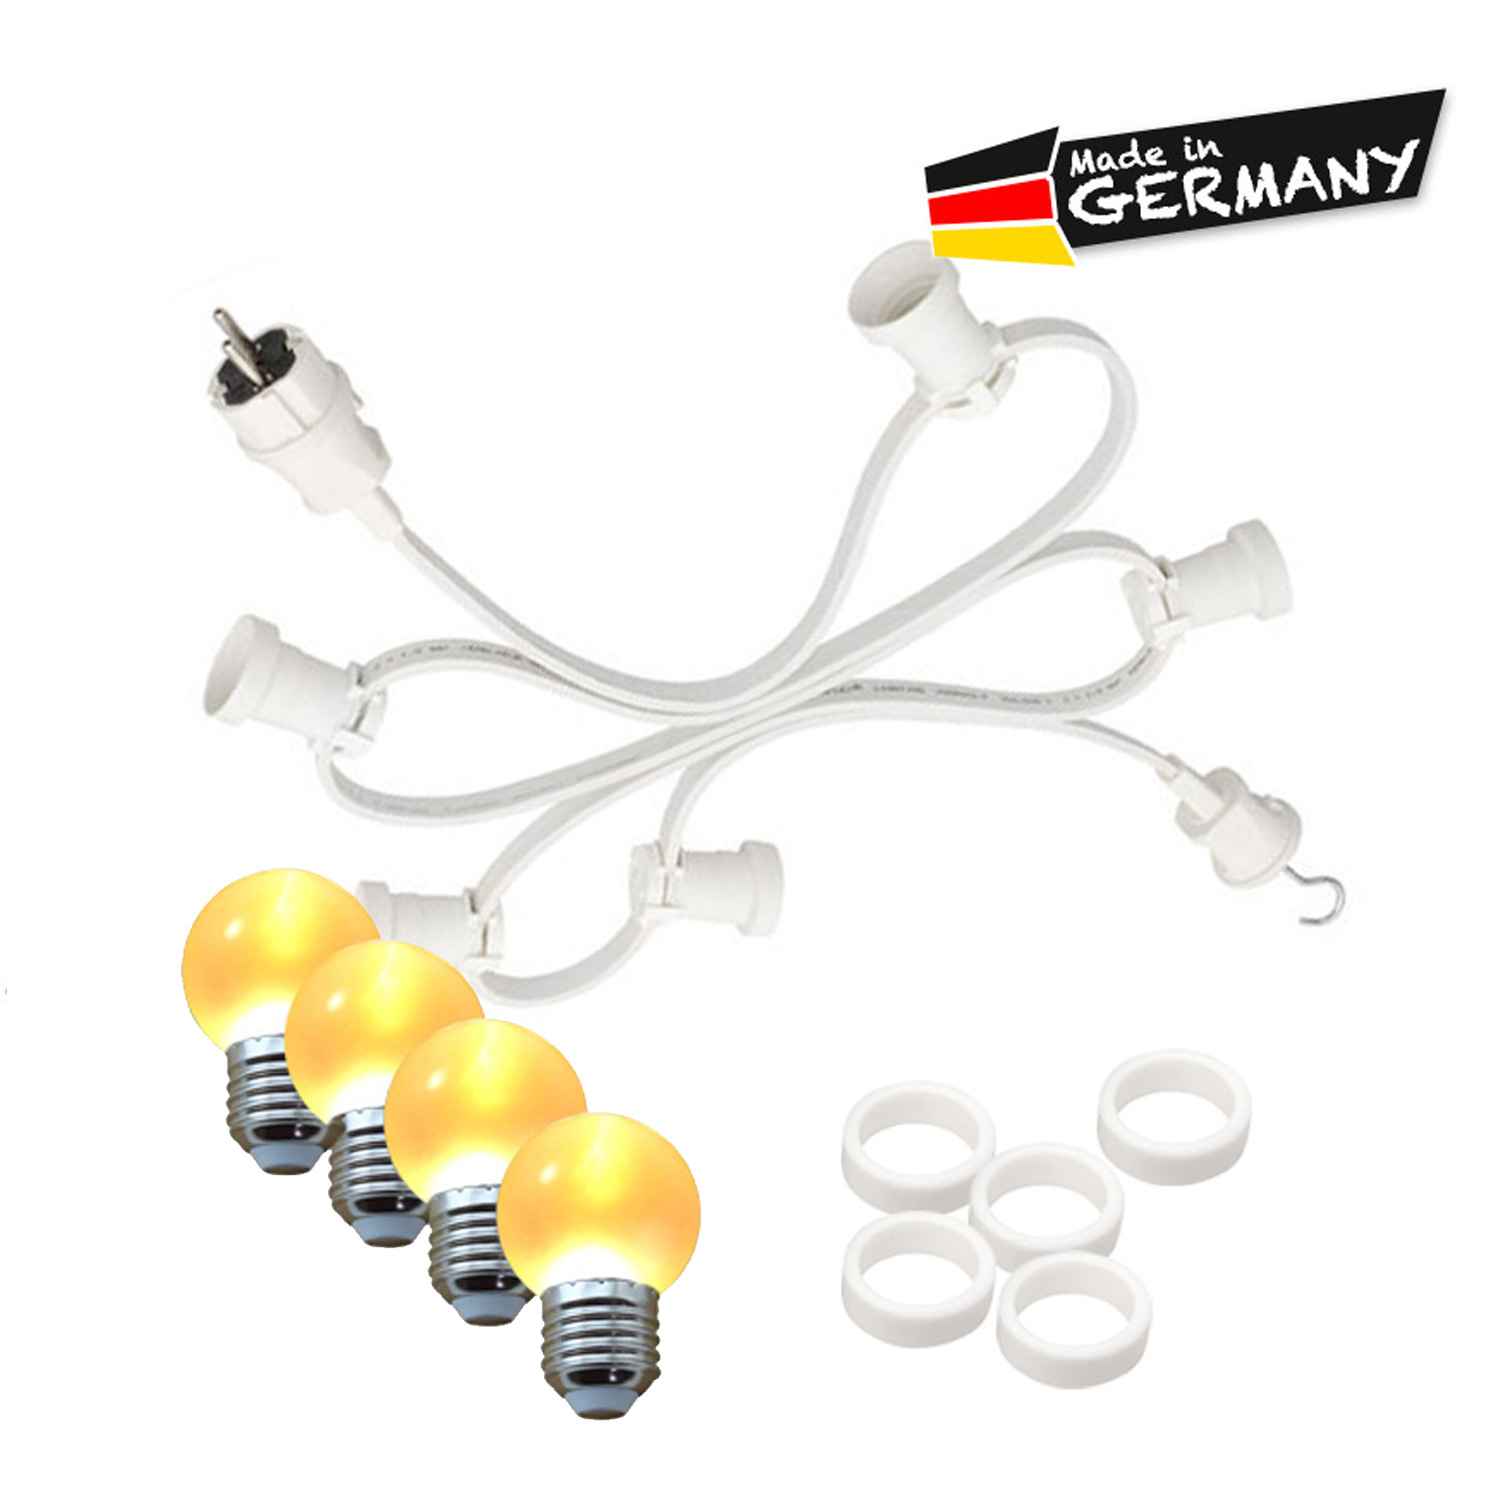 Illu-/Partylichterkette 40m - Außenlichterkette - Made in Germany - 40 x ultra-warmweiße LED Kugeln